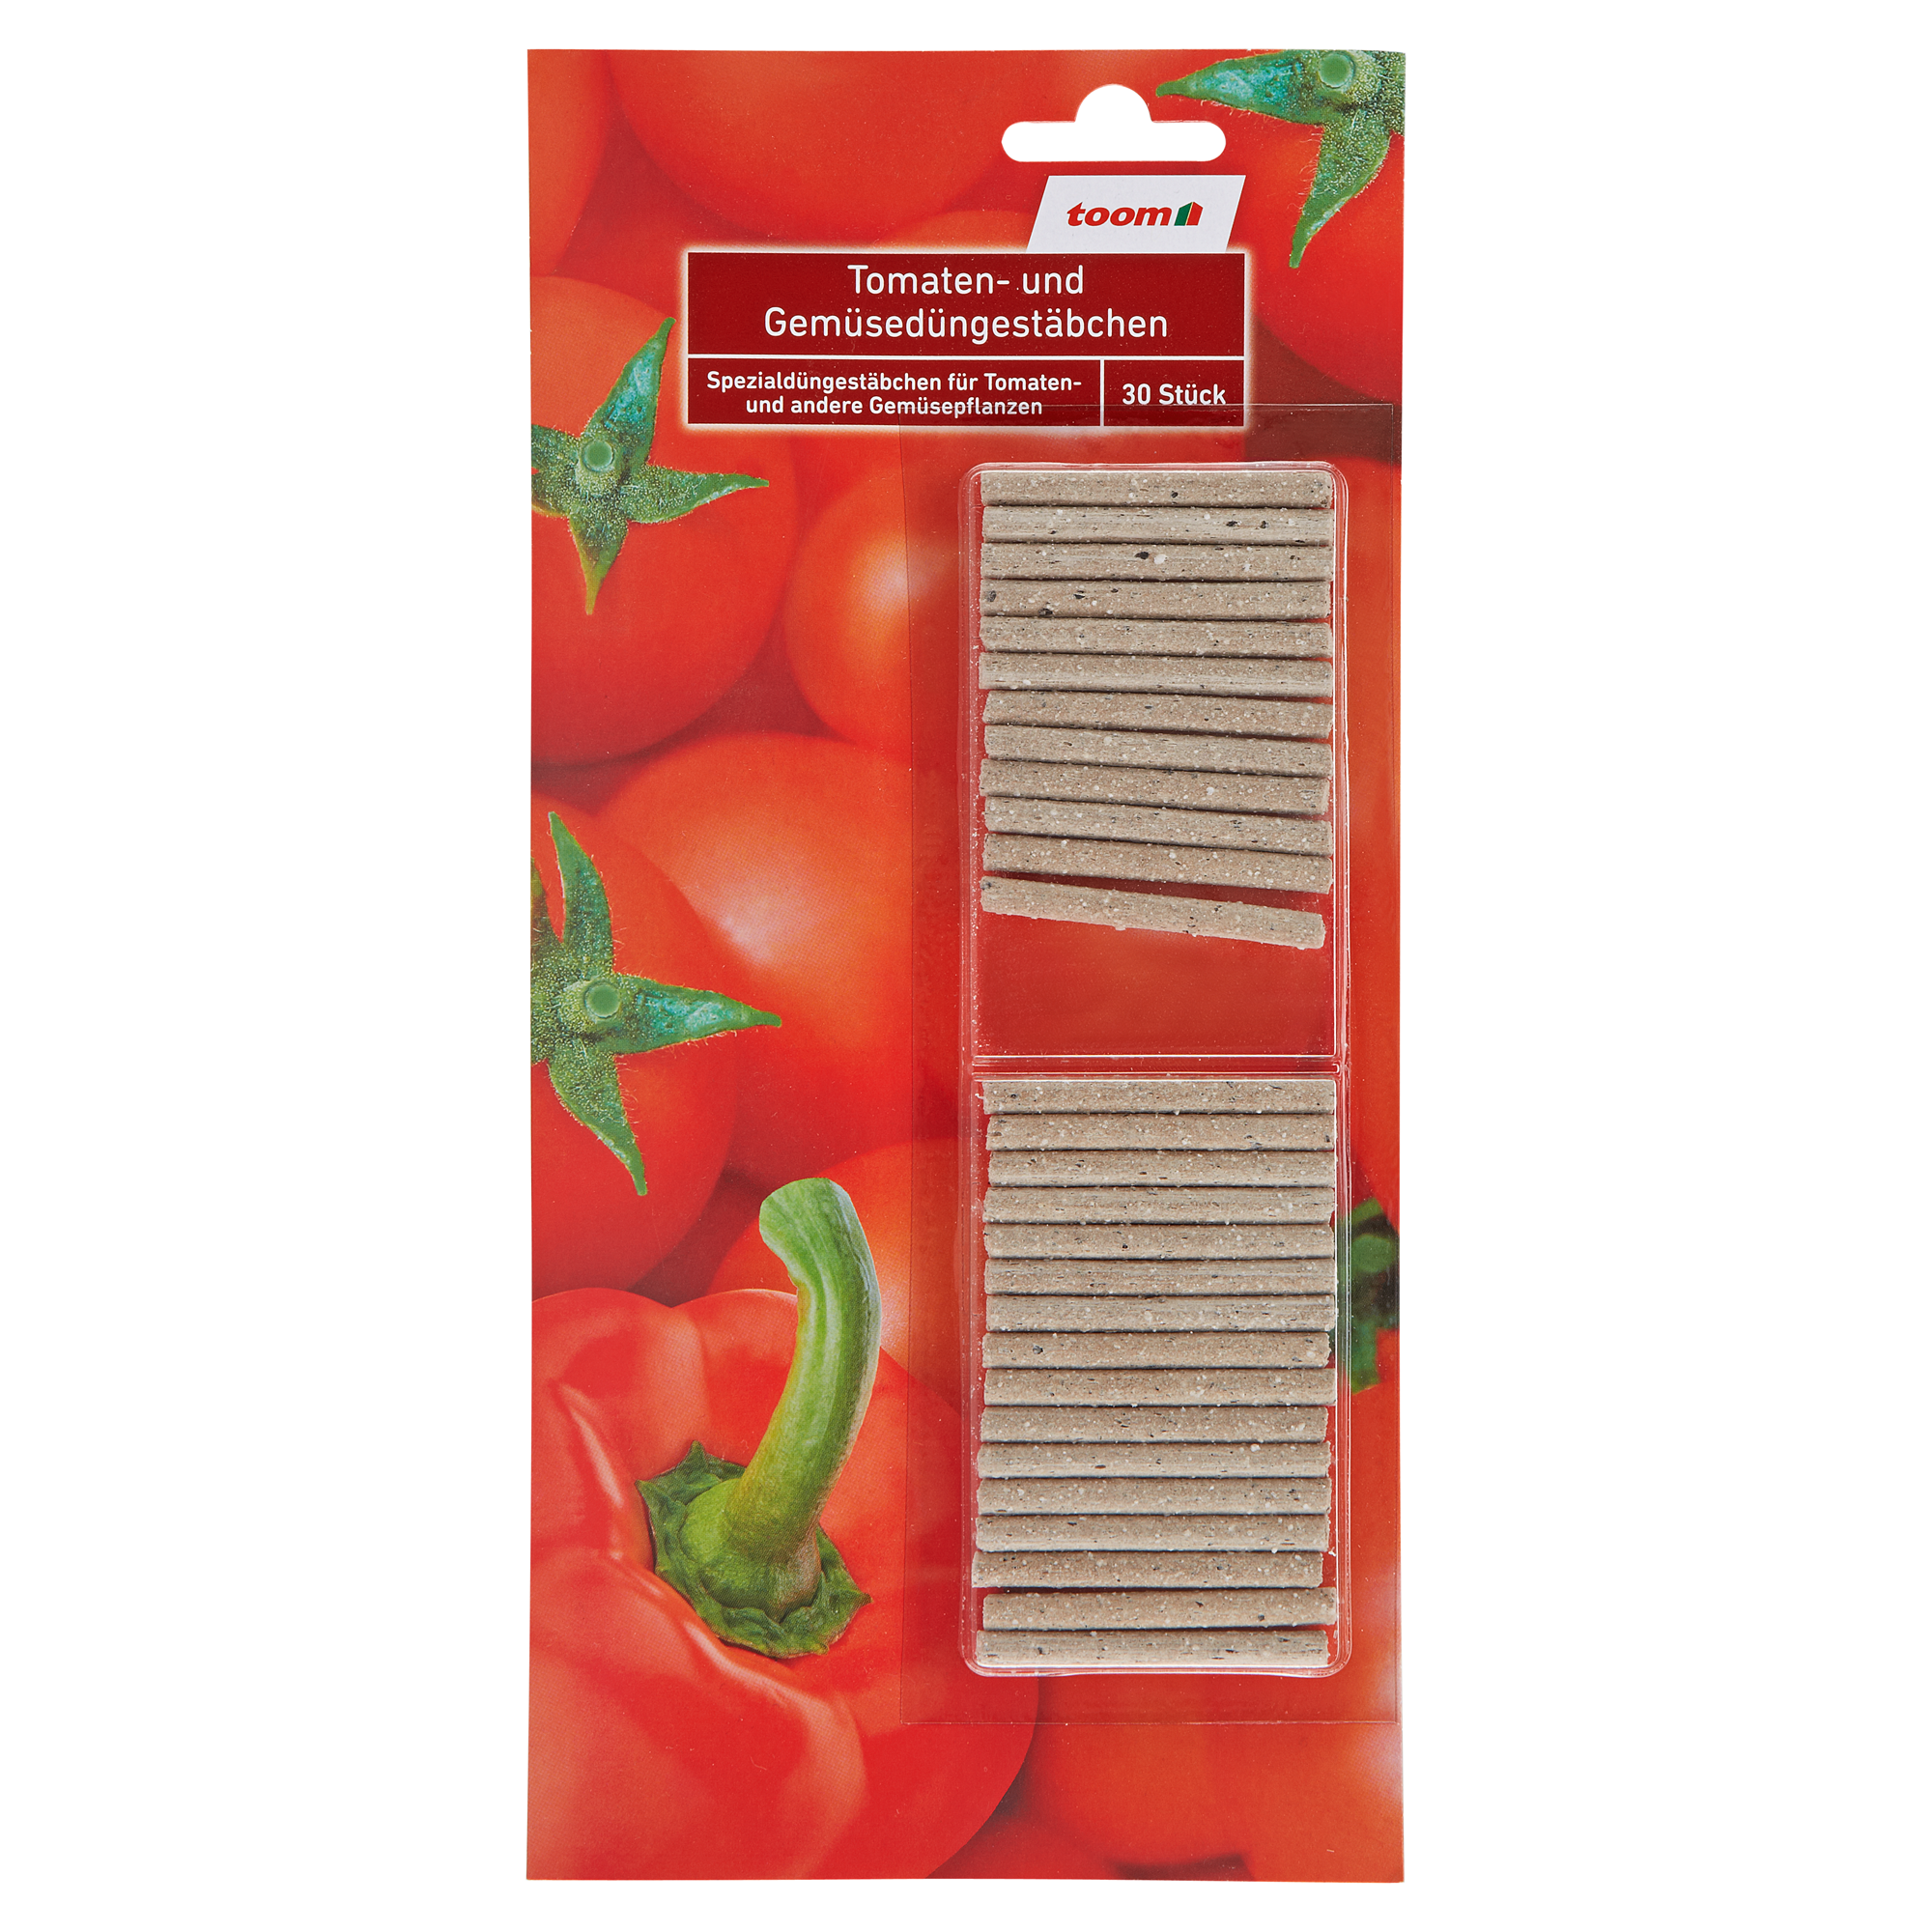 Düngestäbchen für Tomaten und Gemüse 30 Stück + product picture